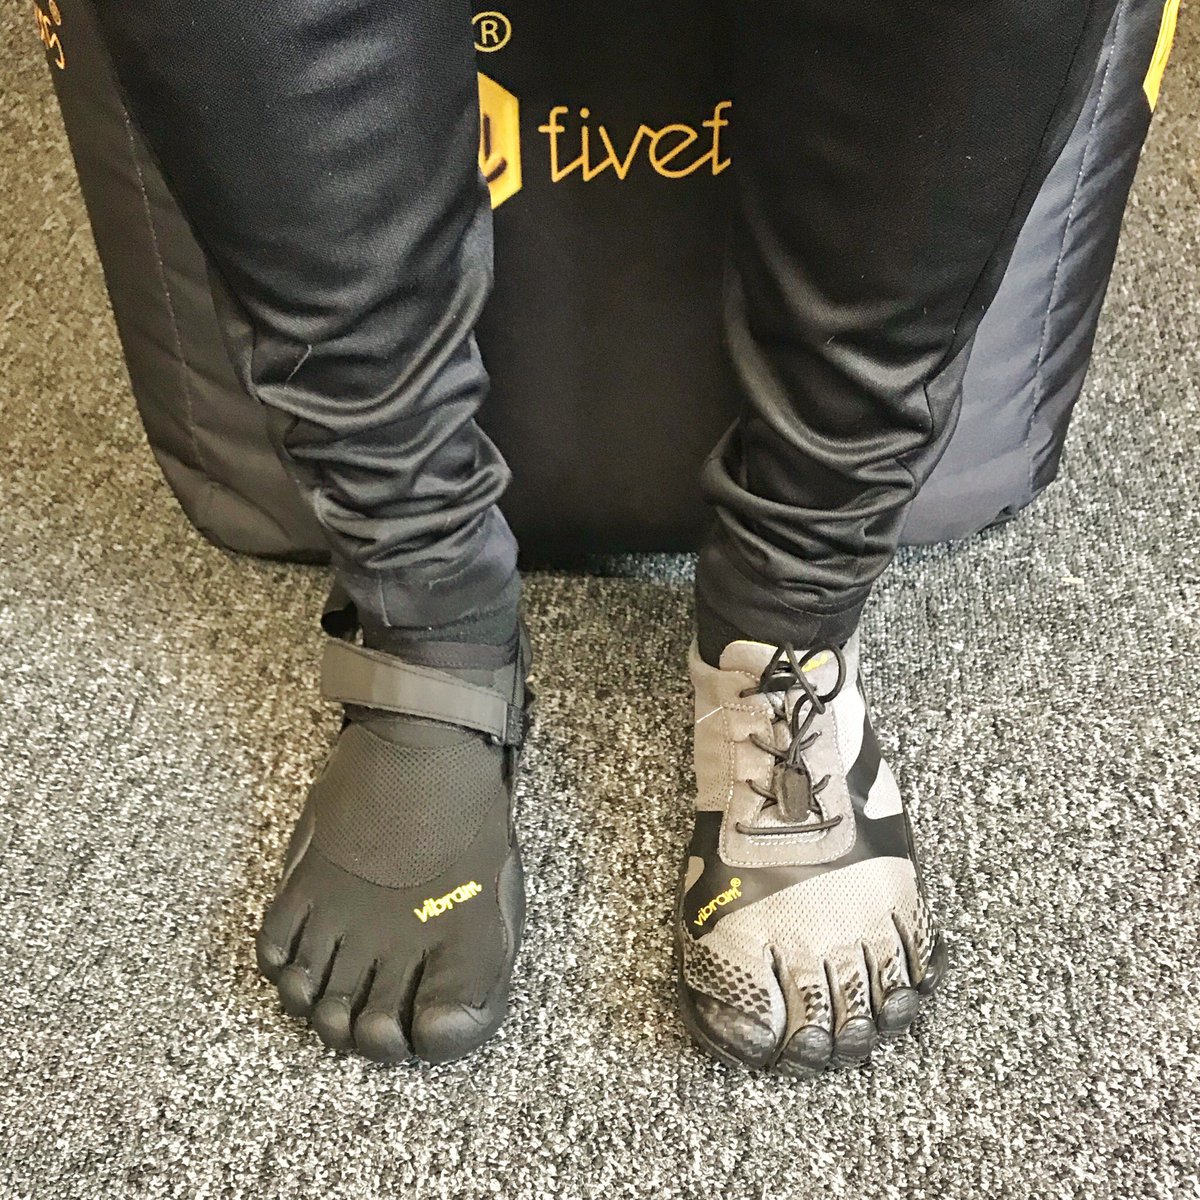 Reproducir heredar represa Barefoot Junkie on Twitter: "Vibram fivefingers KSO Classic or KSO EVO both  great but which do you prefer? https://t.co/ncWXbA8u0B #vibramfivefingers # KSO #barefootisbetter #barefootjunkie #barefootrunning #minimalistfootwear  https://t.co/q9vrLK3fwG ...